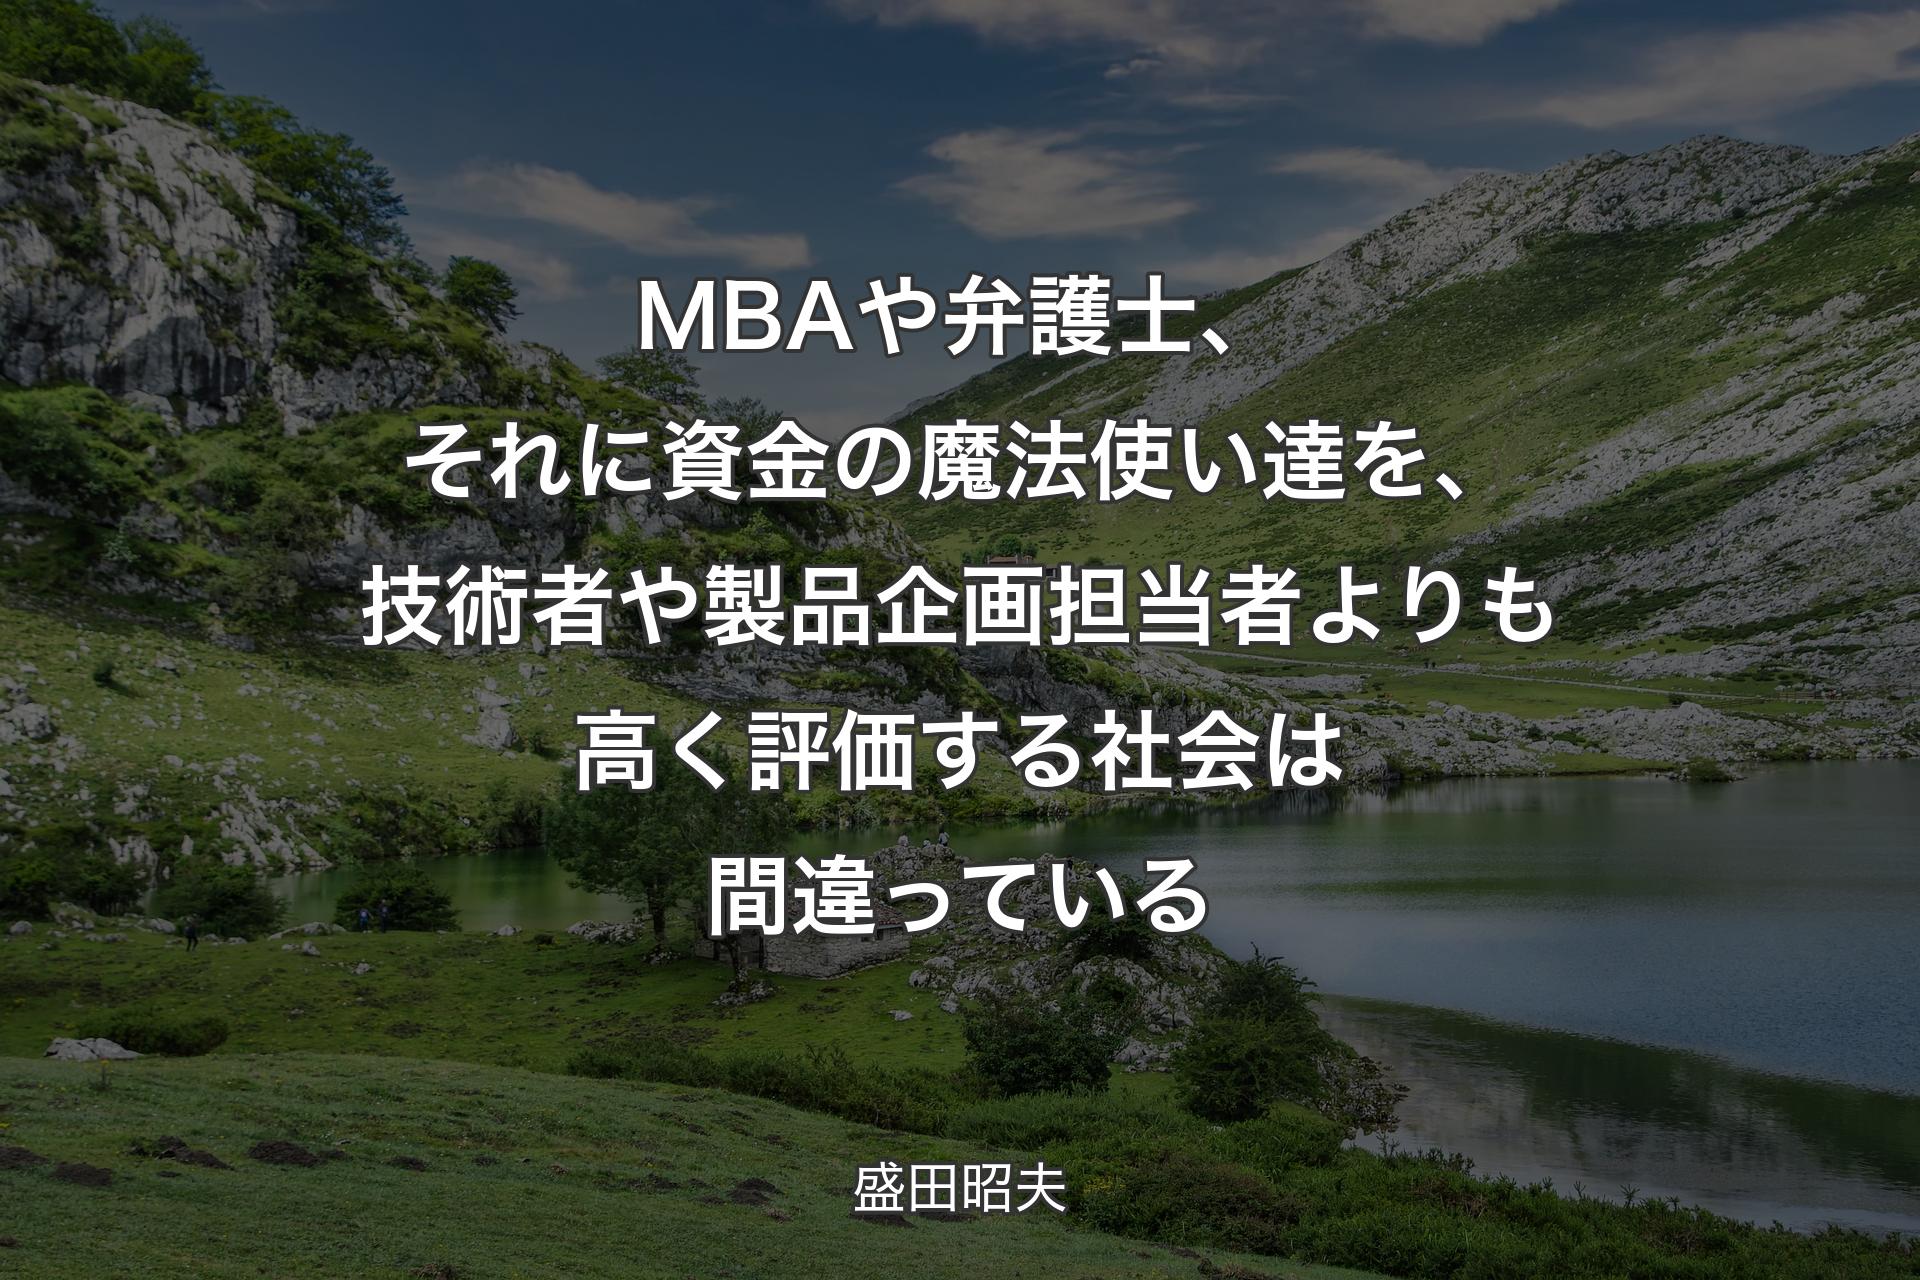 【背景1】MBAや弁護士、それに資金の魔法使い達を、技術者や製品企画担当者よりも高く評価する社会は間違っている - 盛田昭夫